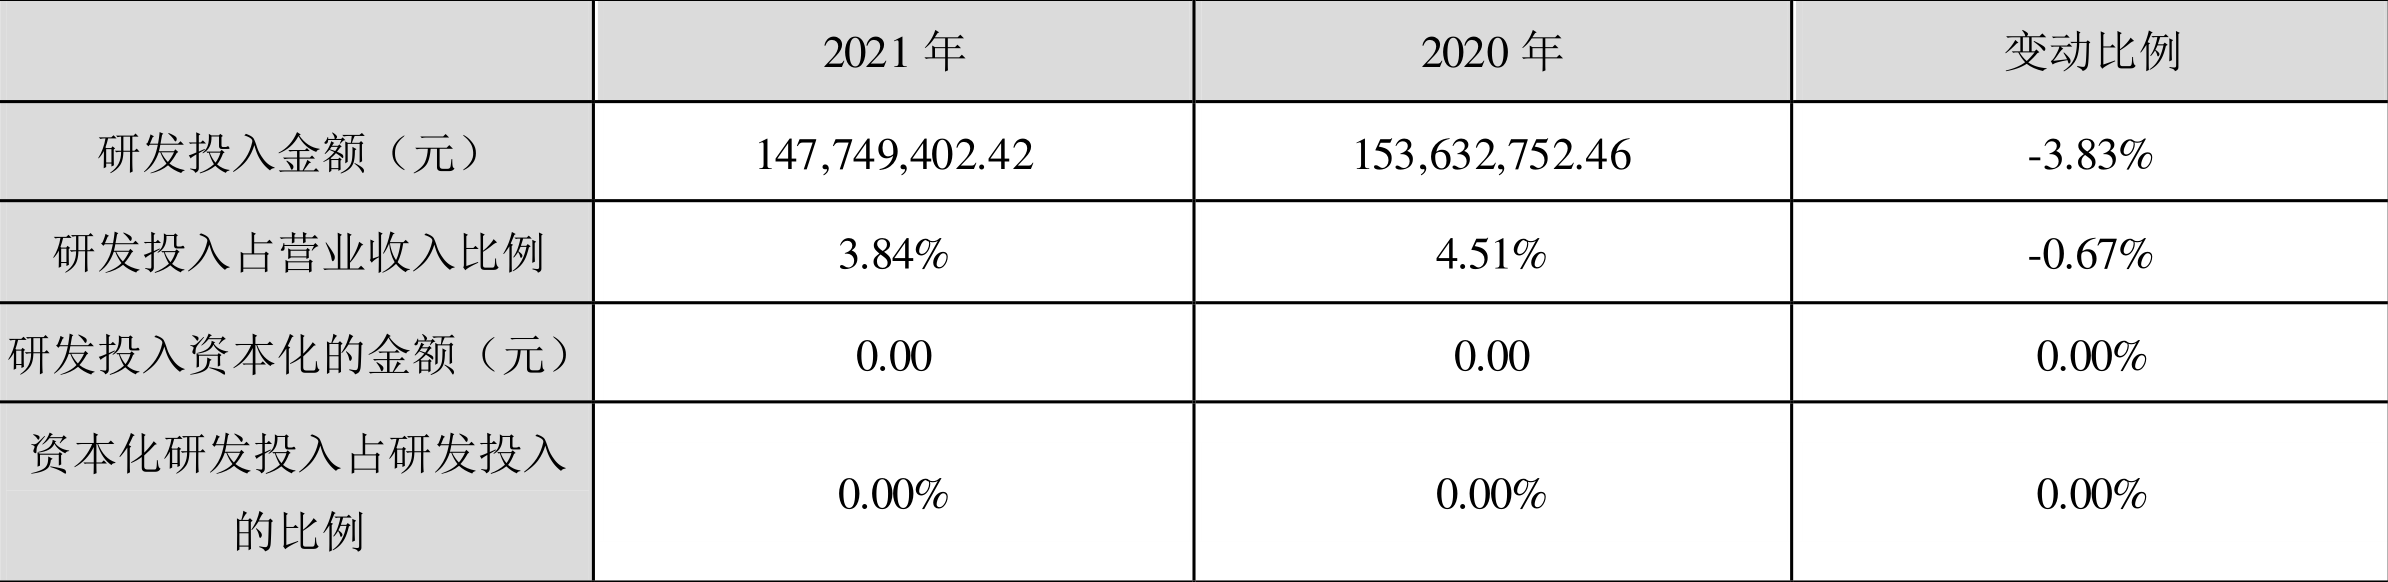 东阿阿胶：2021年净利润同比增长917.43% 拟10派6.5元